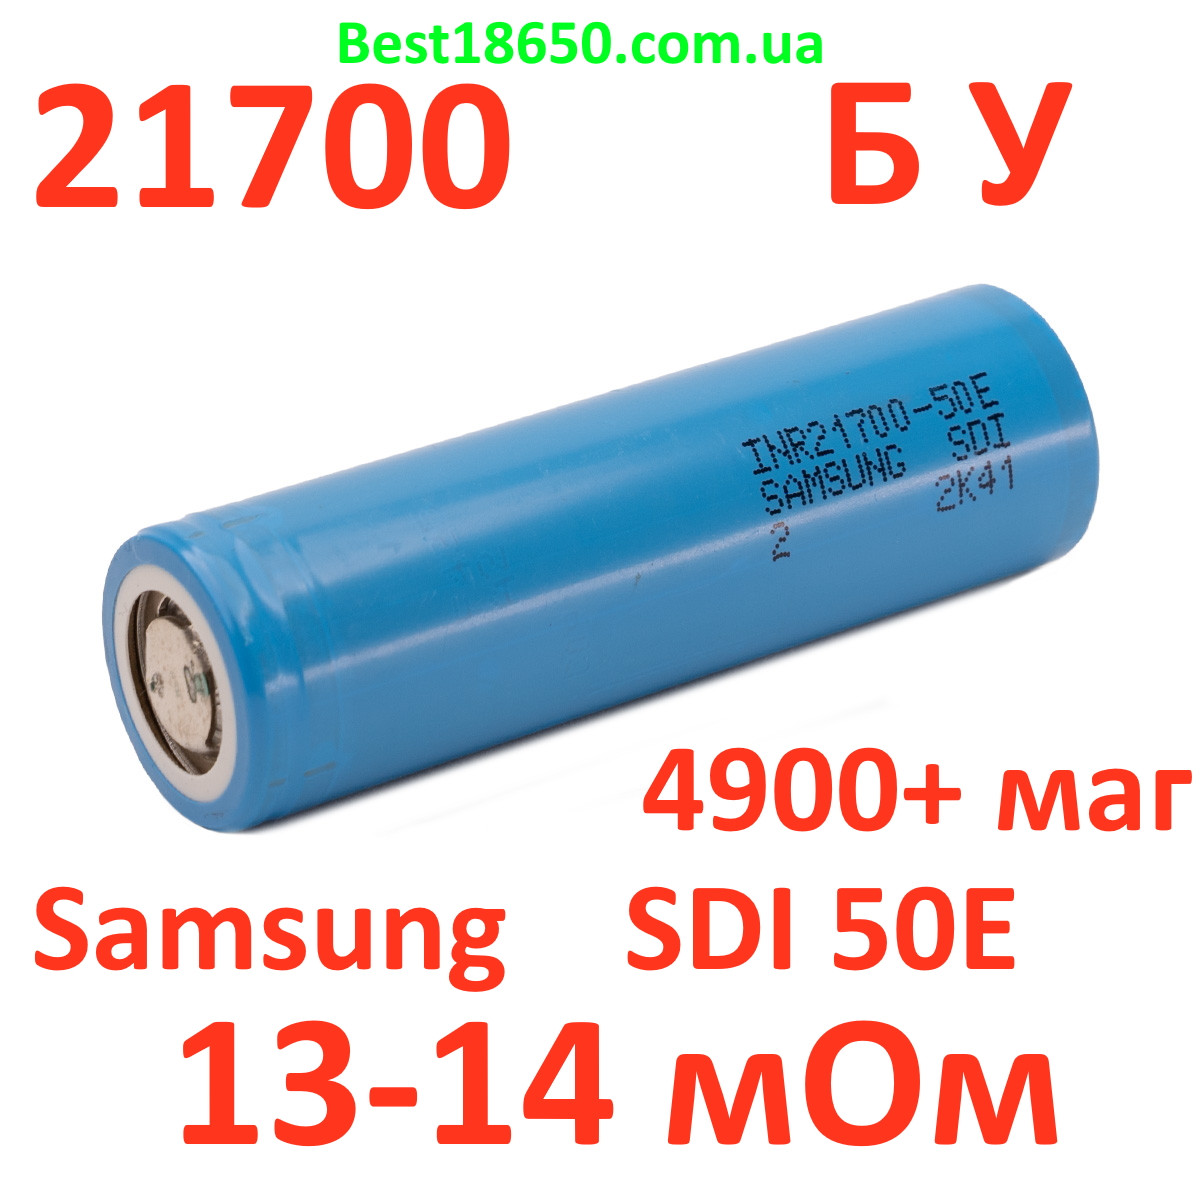 21700 Samsung SDI 50E БУ 5000 маг